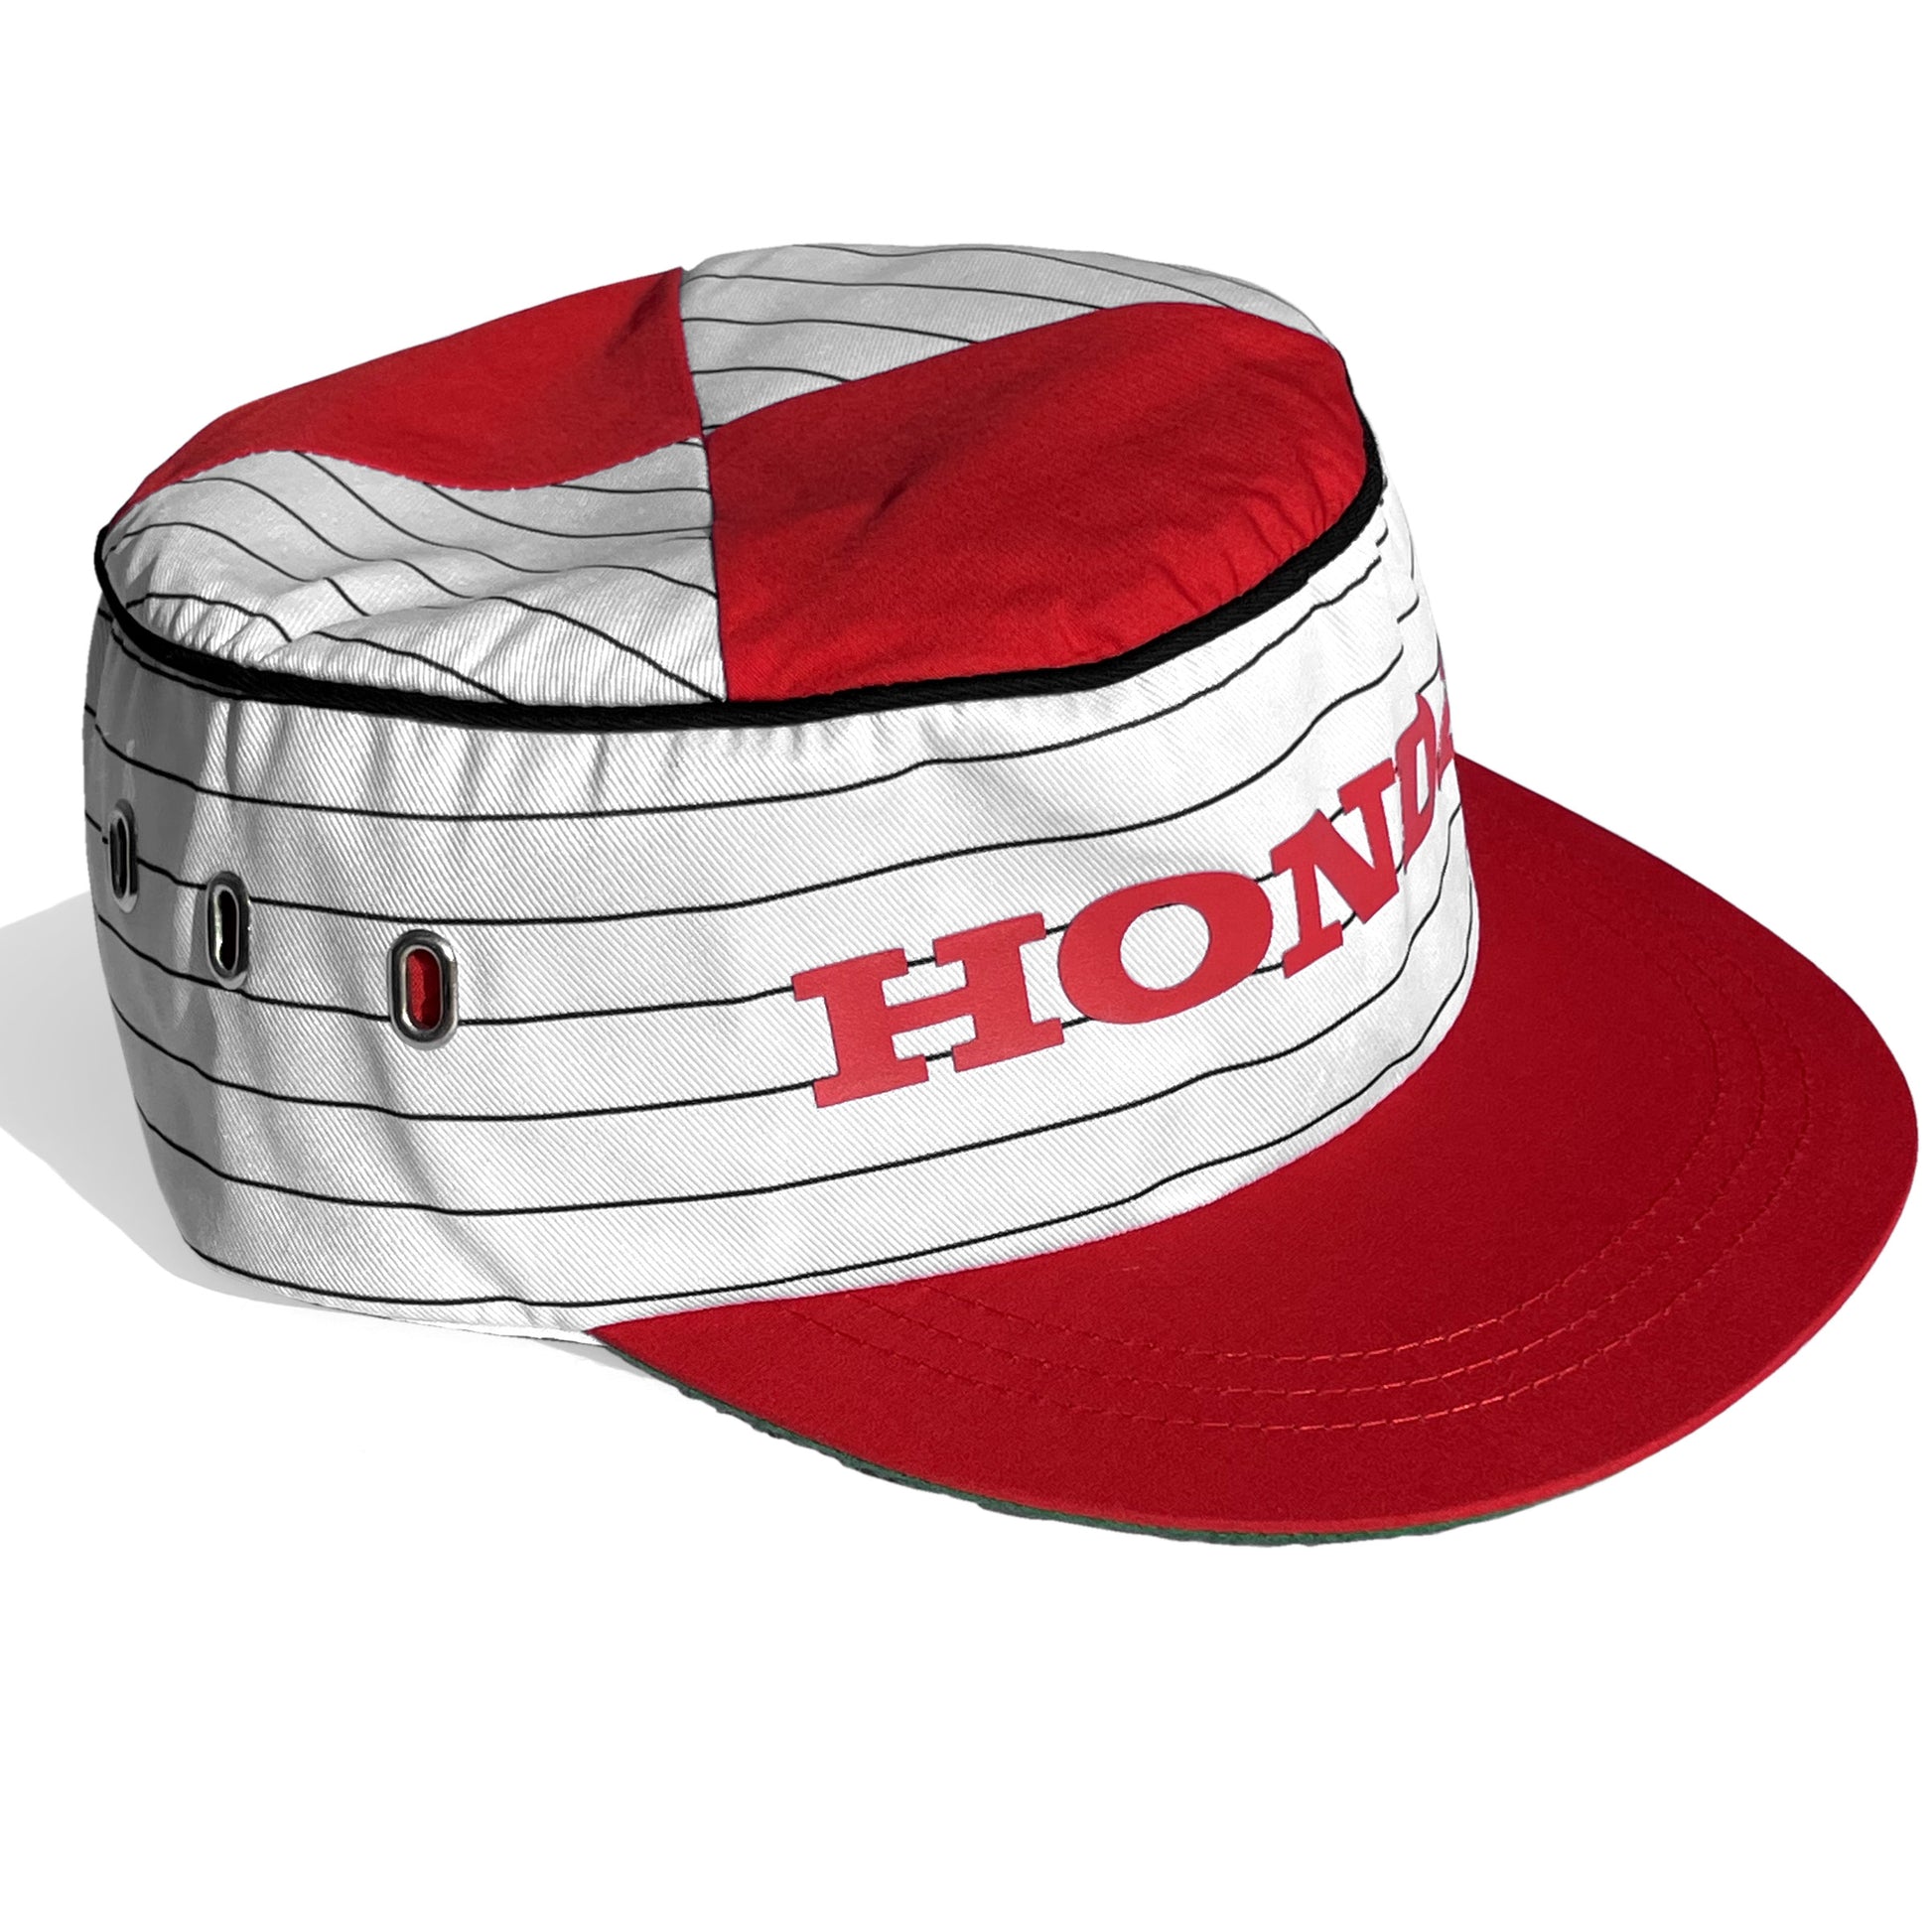 Rond en rond Ritueel troosten 1966 Honda Racing Replica Mechanics Hat – Vintage Culture